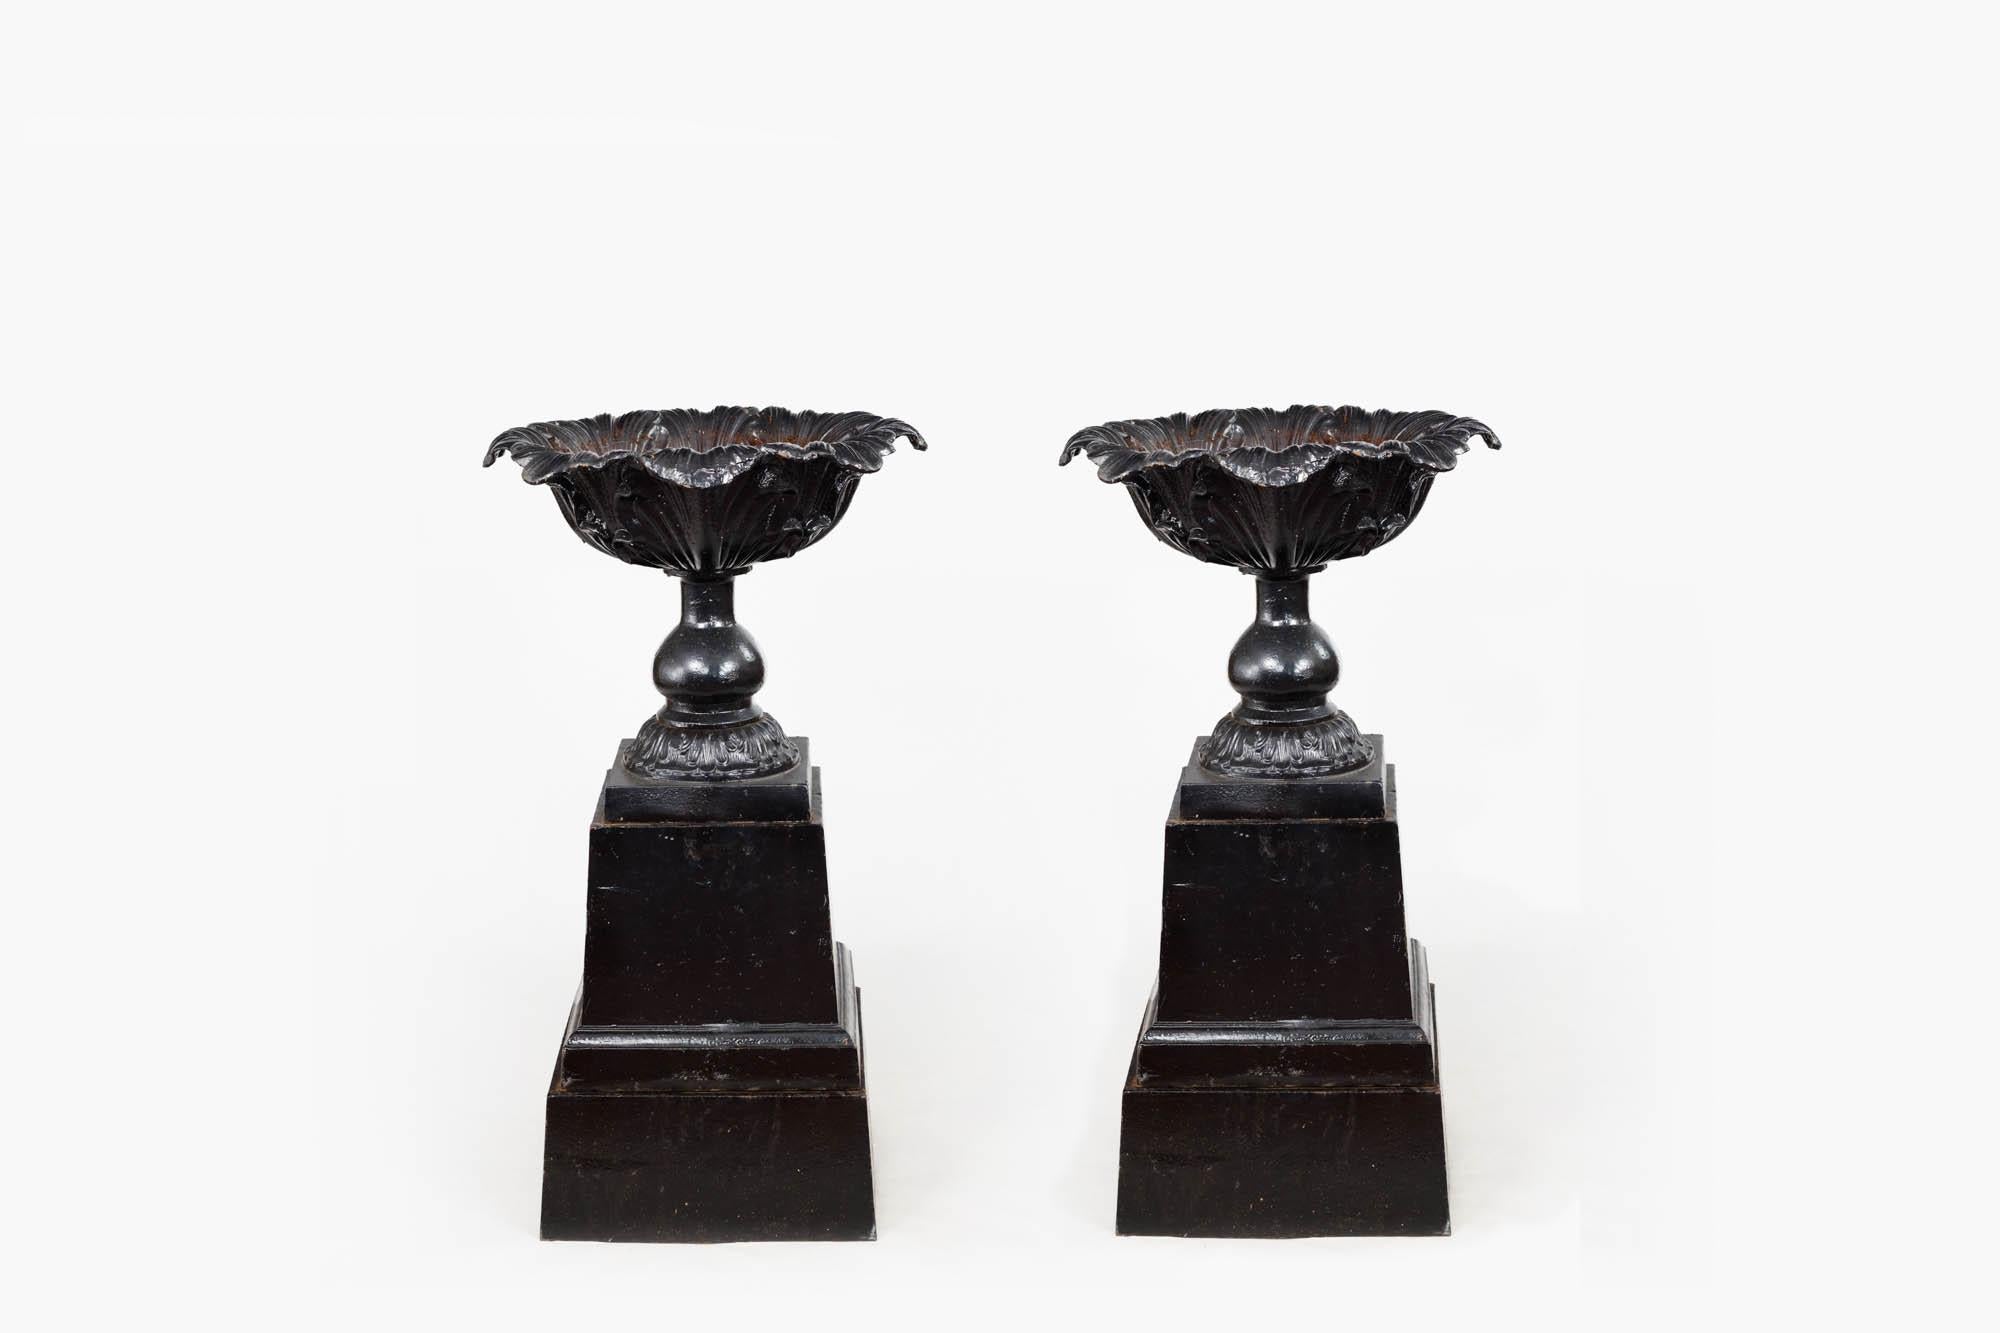 19. Jahrhundert Zwei Urnen aus schwarzem Gusseisen mit Balustersäulen und ungewöhnlichen Kohlblattaufsätzen, die auf massiven, spitz zulaufenden quadratischen Sockeln stehen. Die detaillierten Blattmuster, mit denen diese Urnen verziert sind, bilden